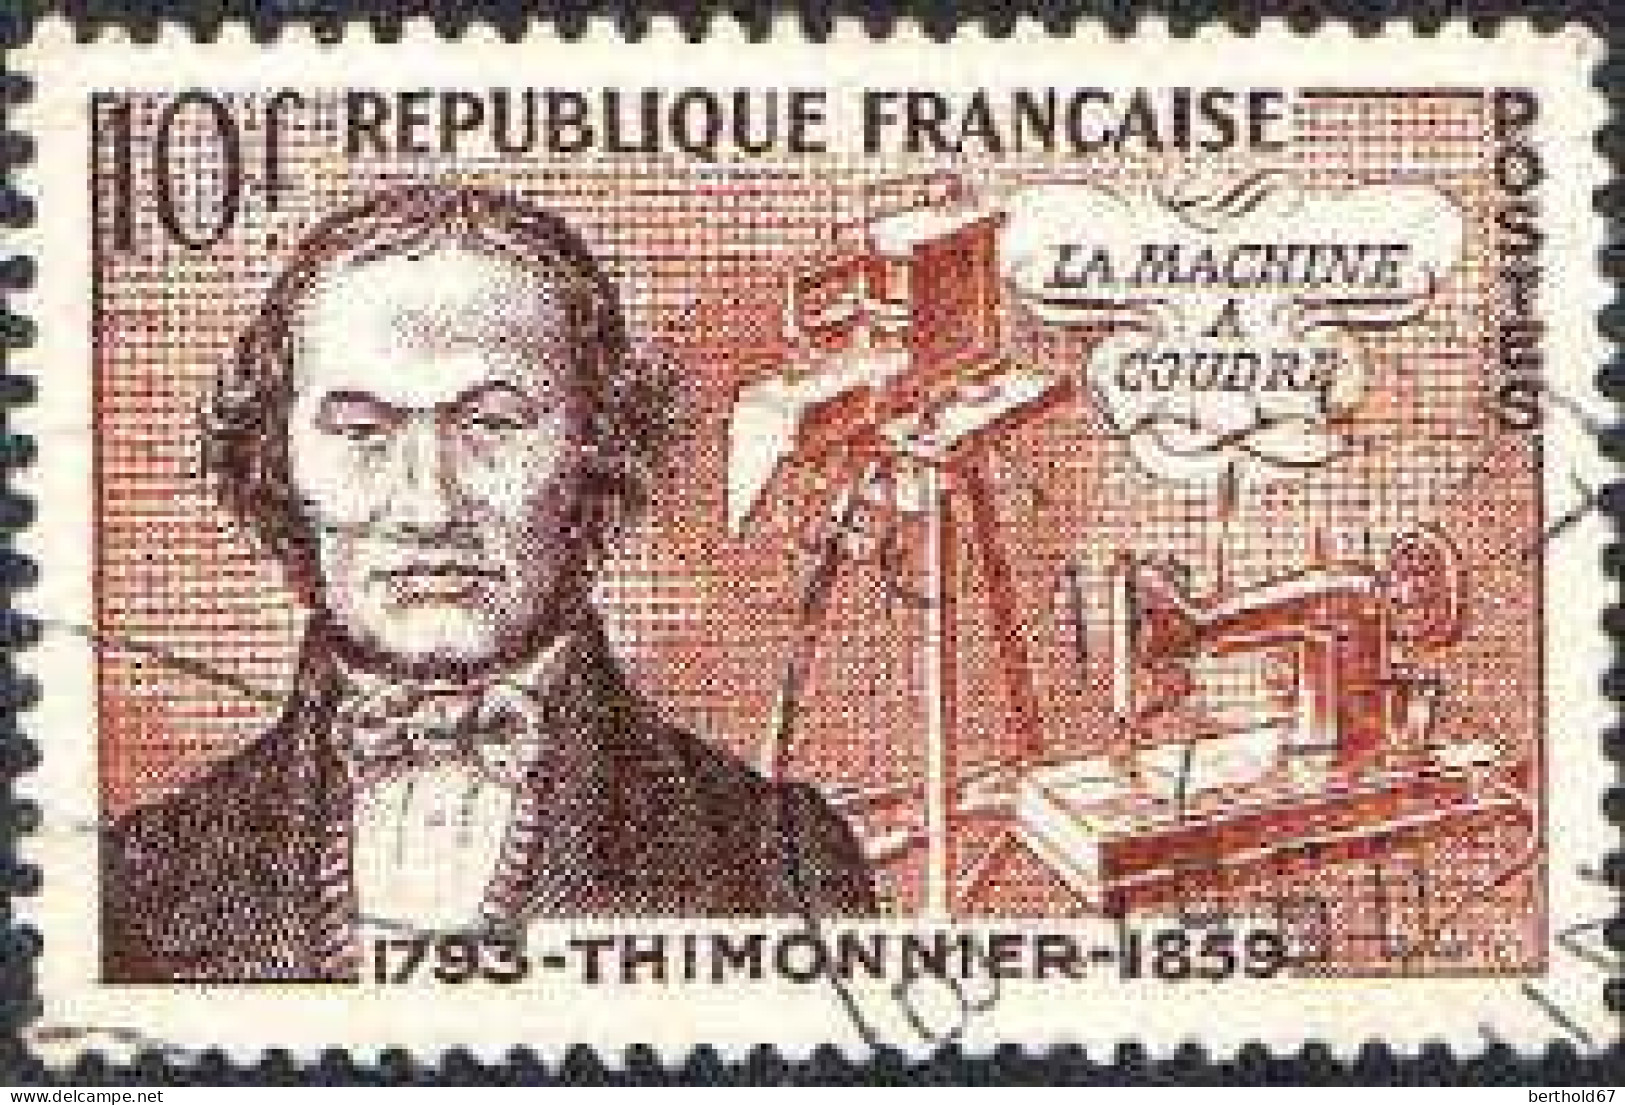 France Poste Obl Yv:1013 Mi:1038 La Machine à Coudre Thimonnier (TB Cachet Rond) - Used Stamps